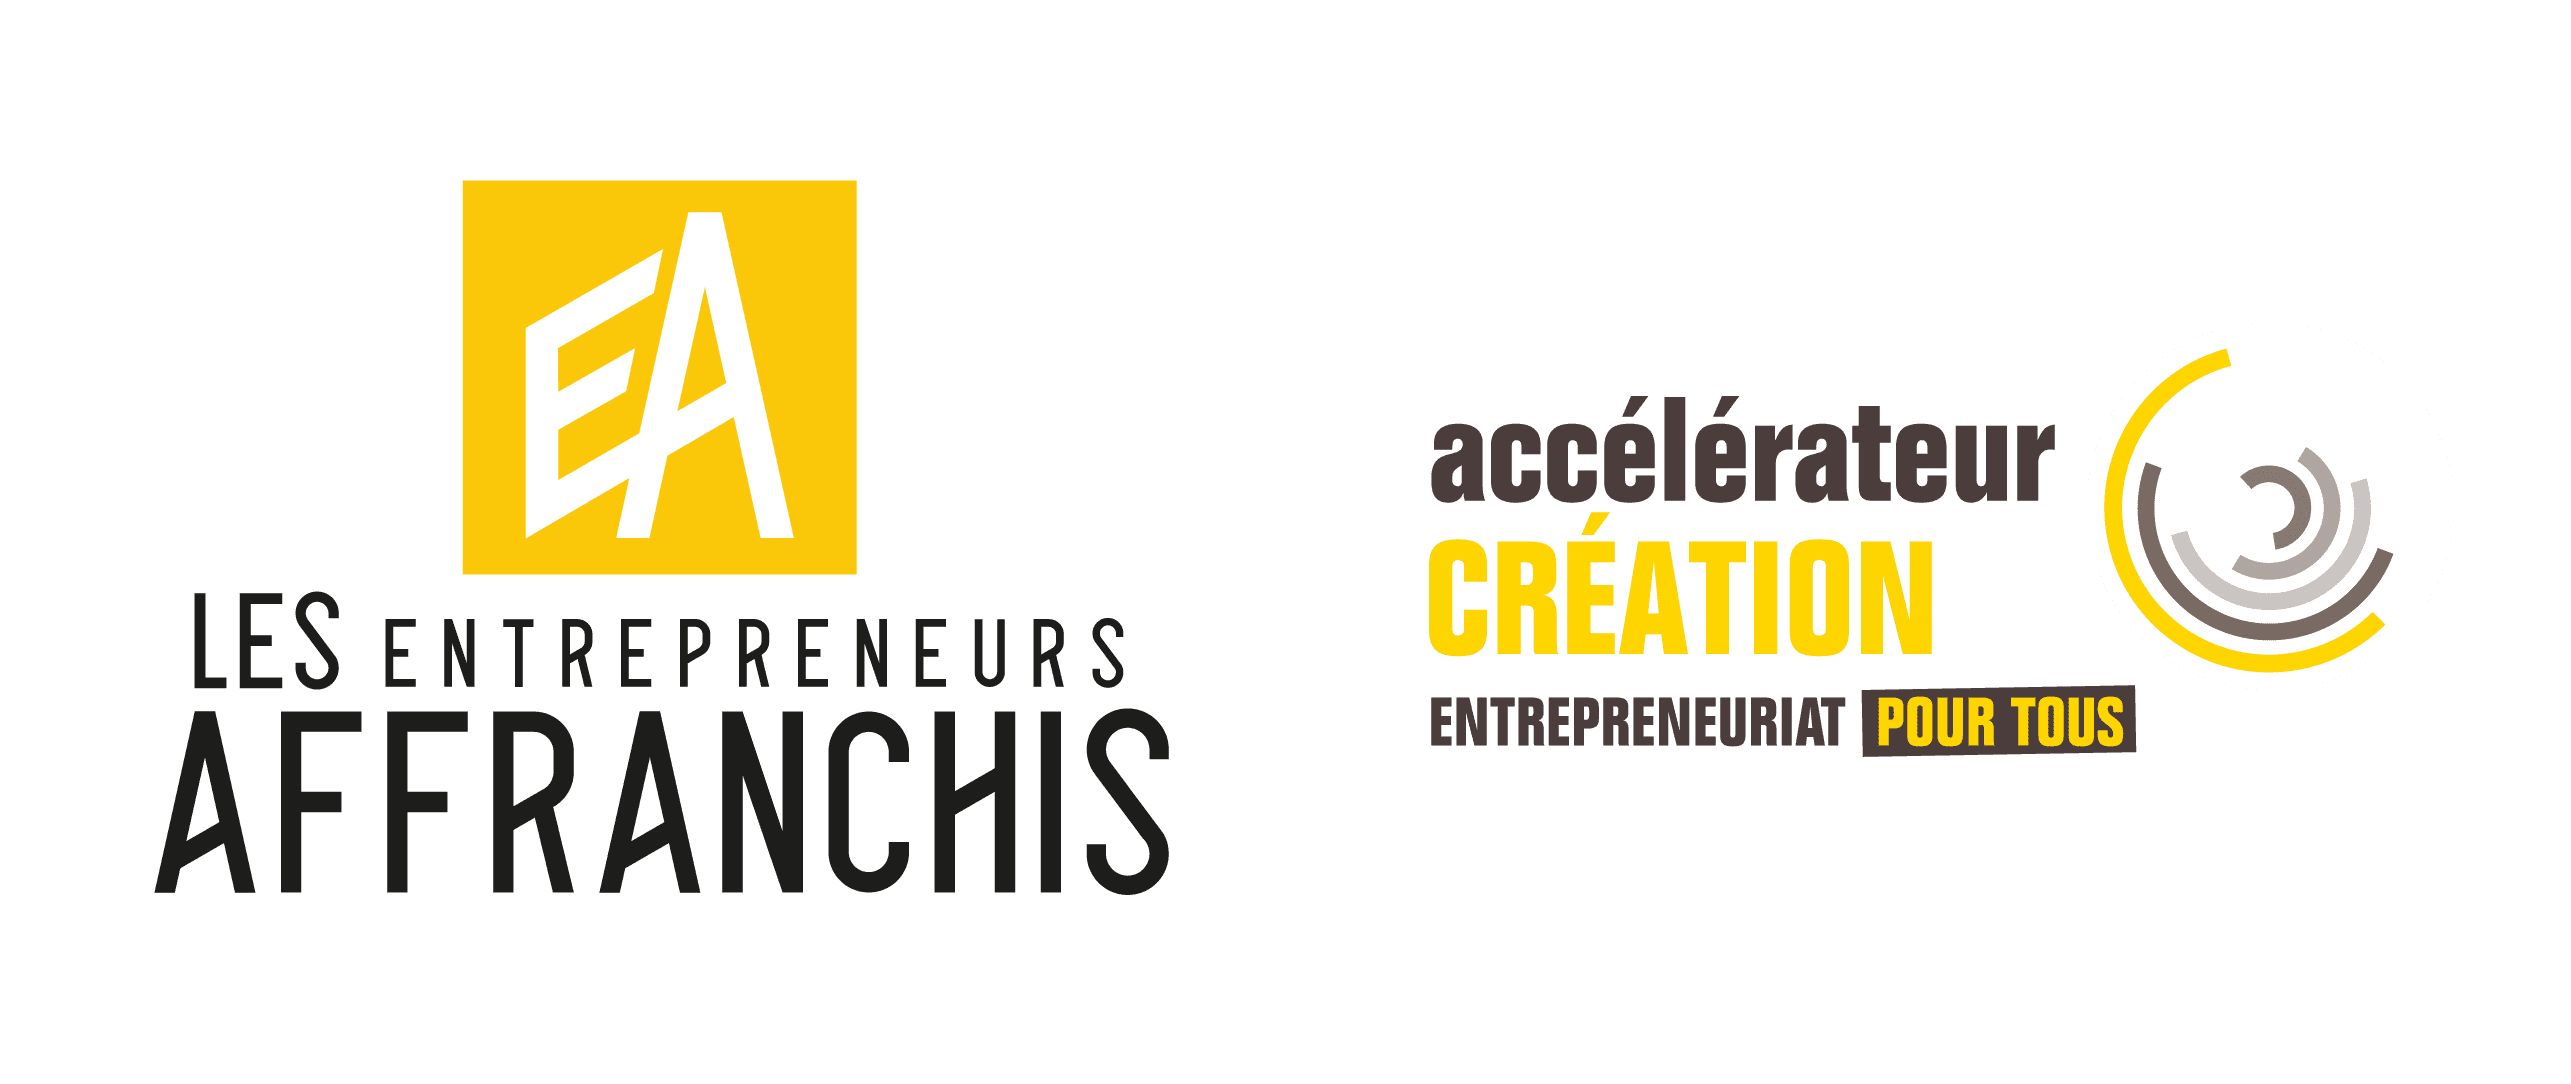 Accélérateur Création - Les Entrepreneurs Affranchis